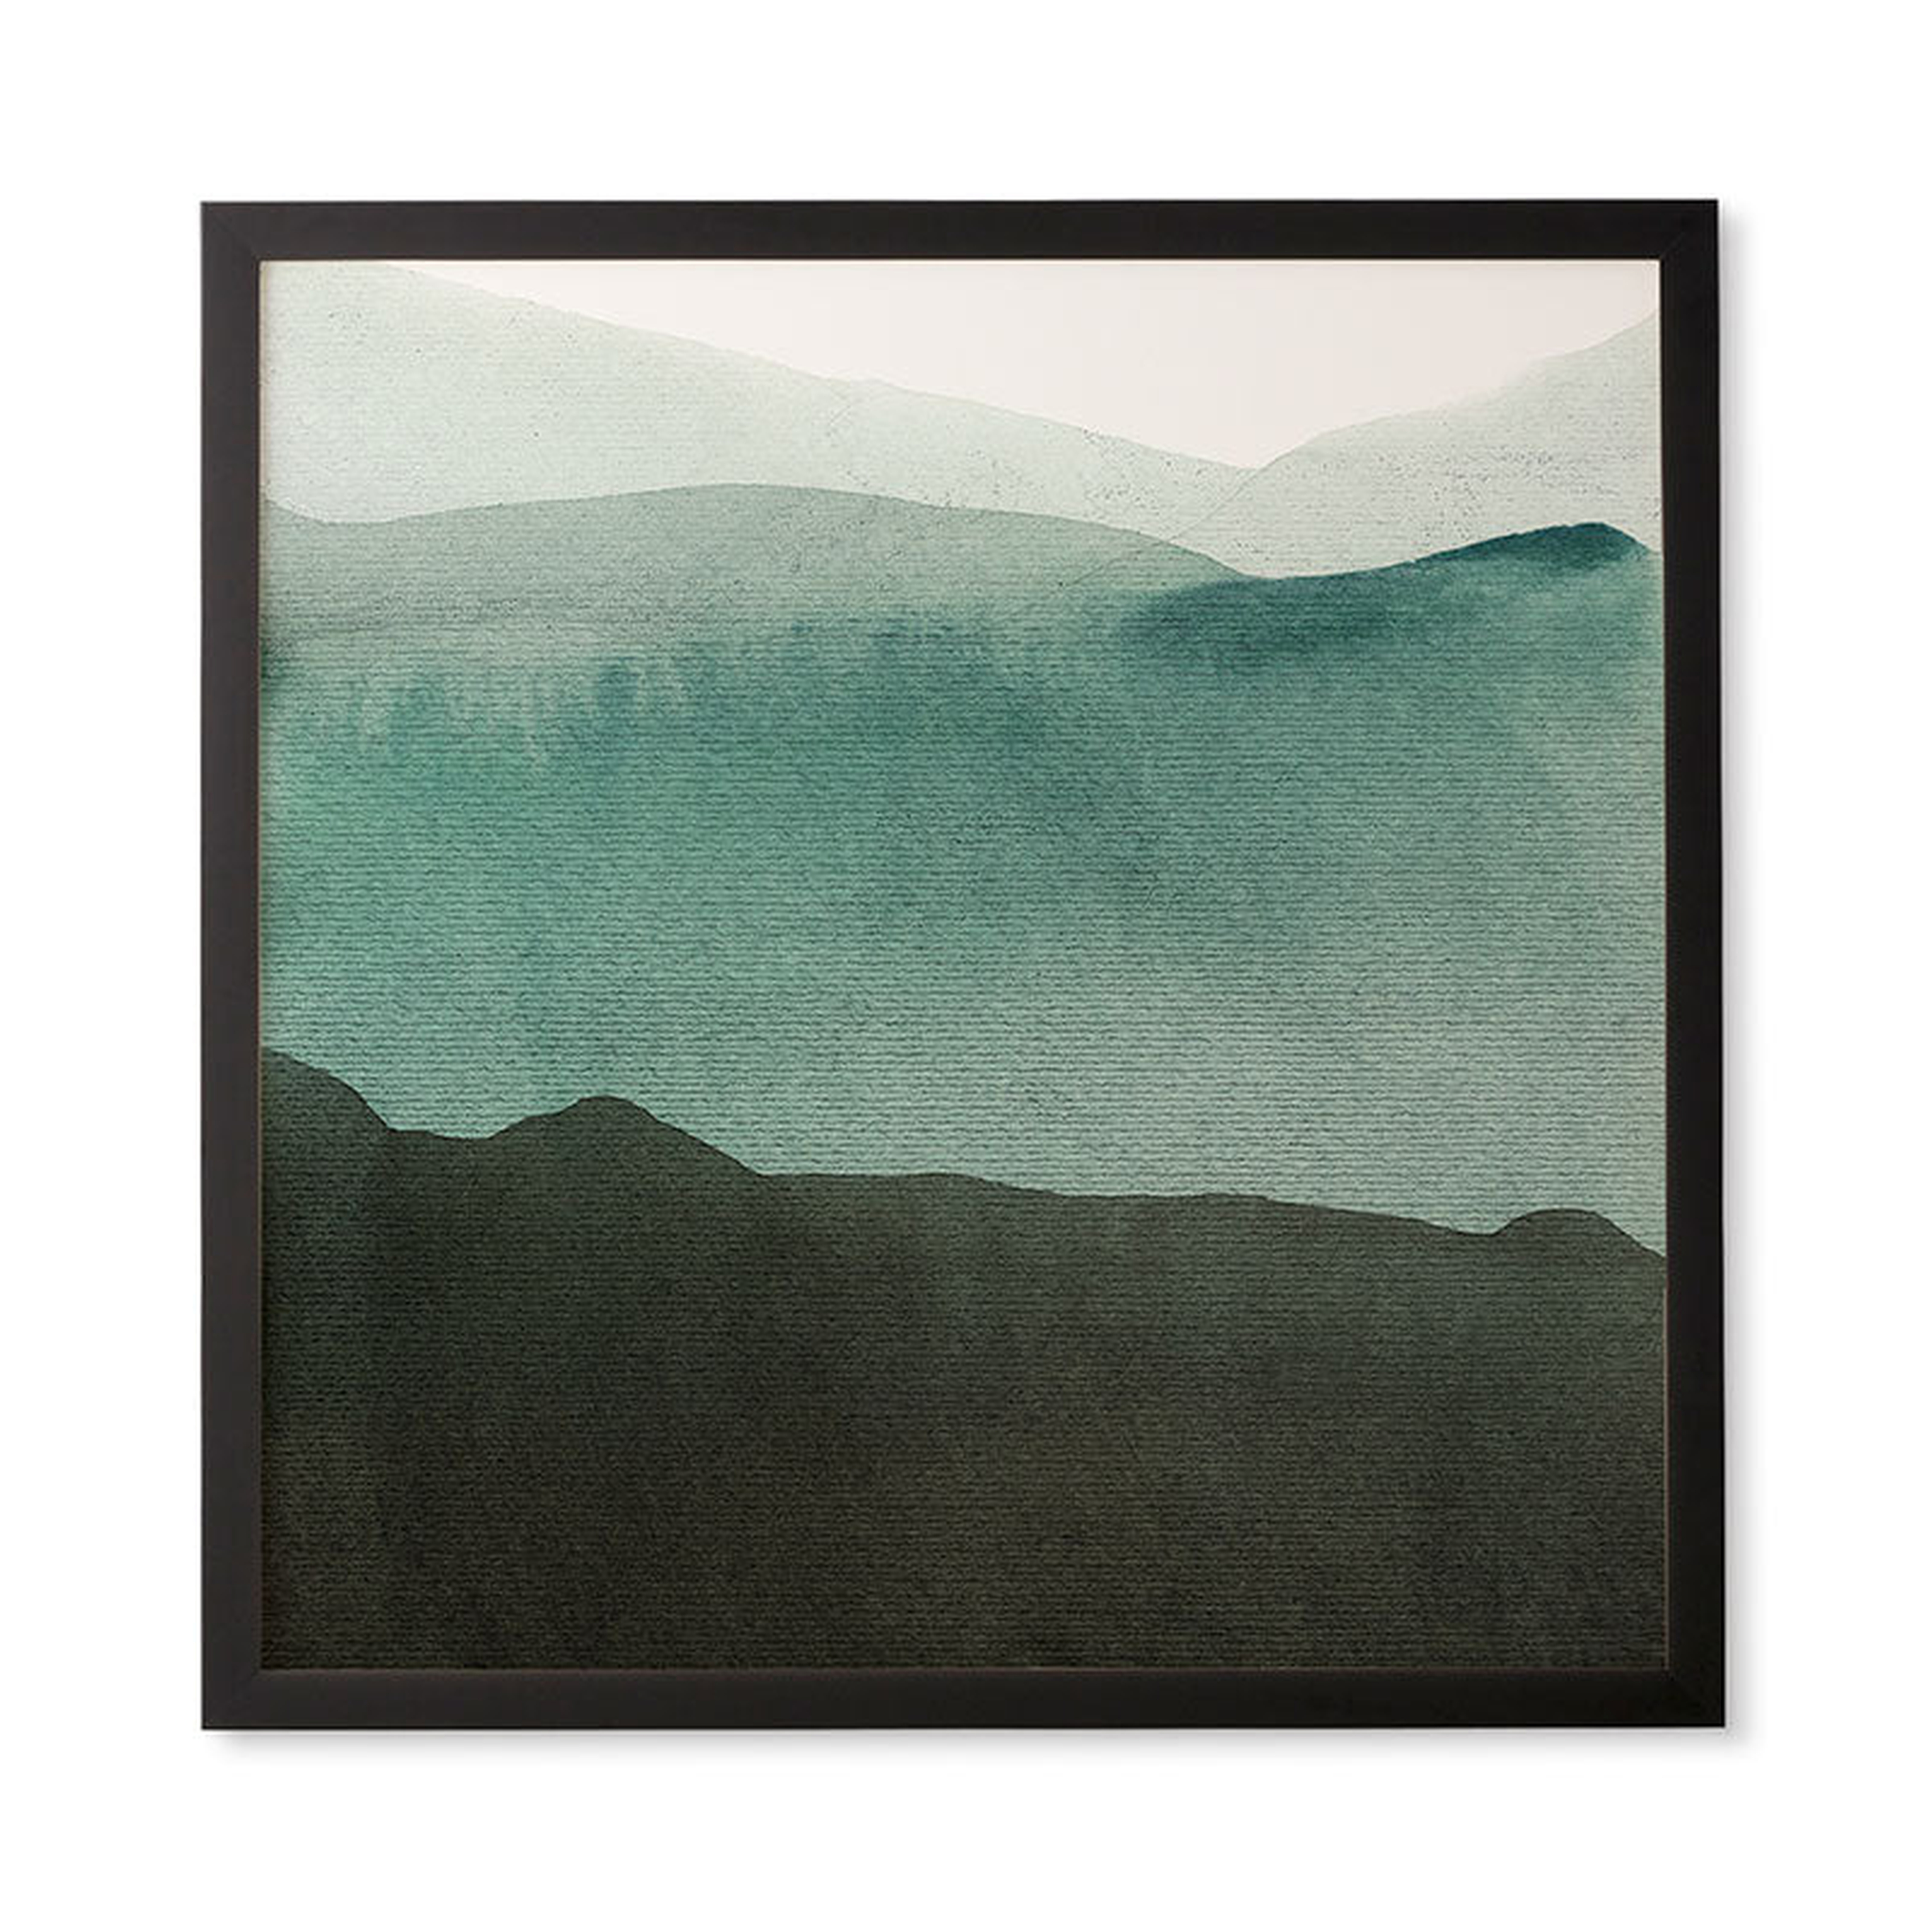 Valleys Deep Mountains High by Iris Lehnhardt - Framed Wall Art Bamboo 30" x 30" - Wander Print Co.